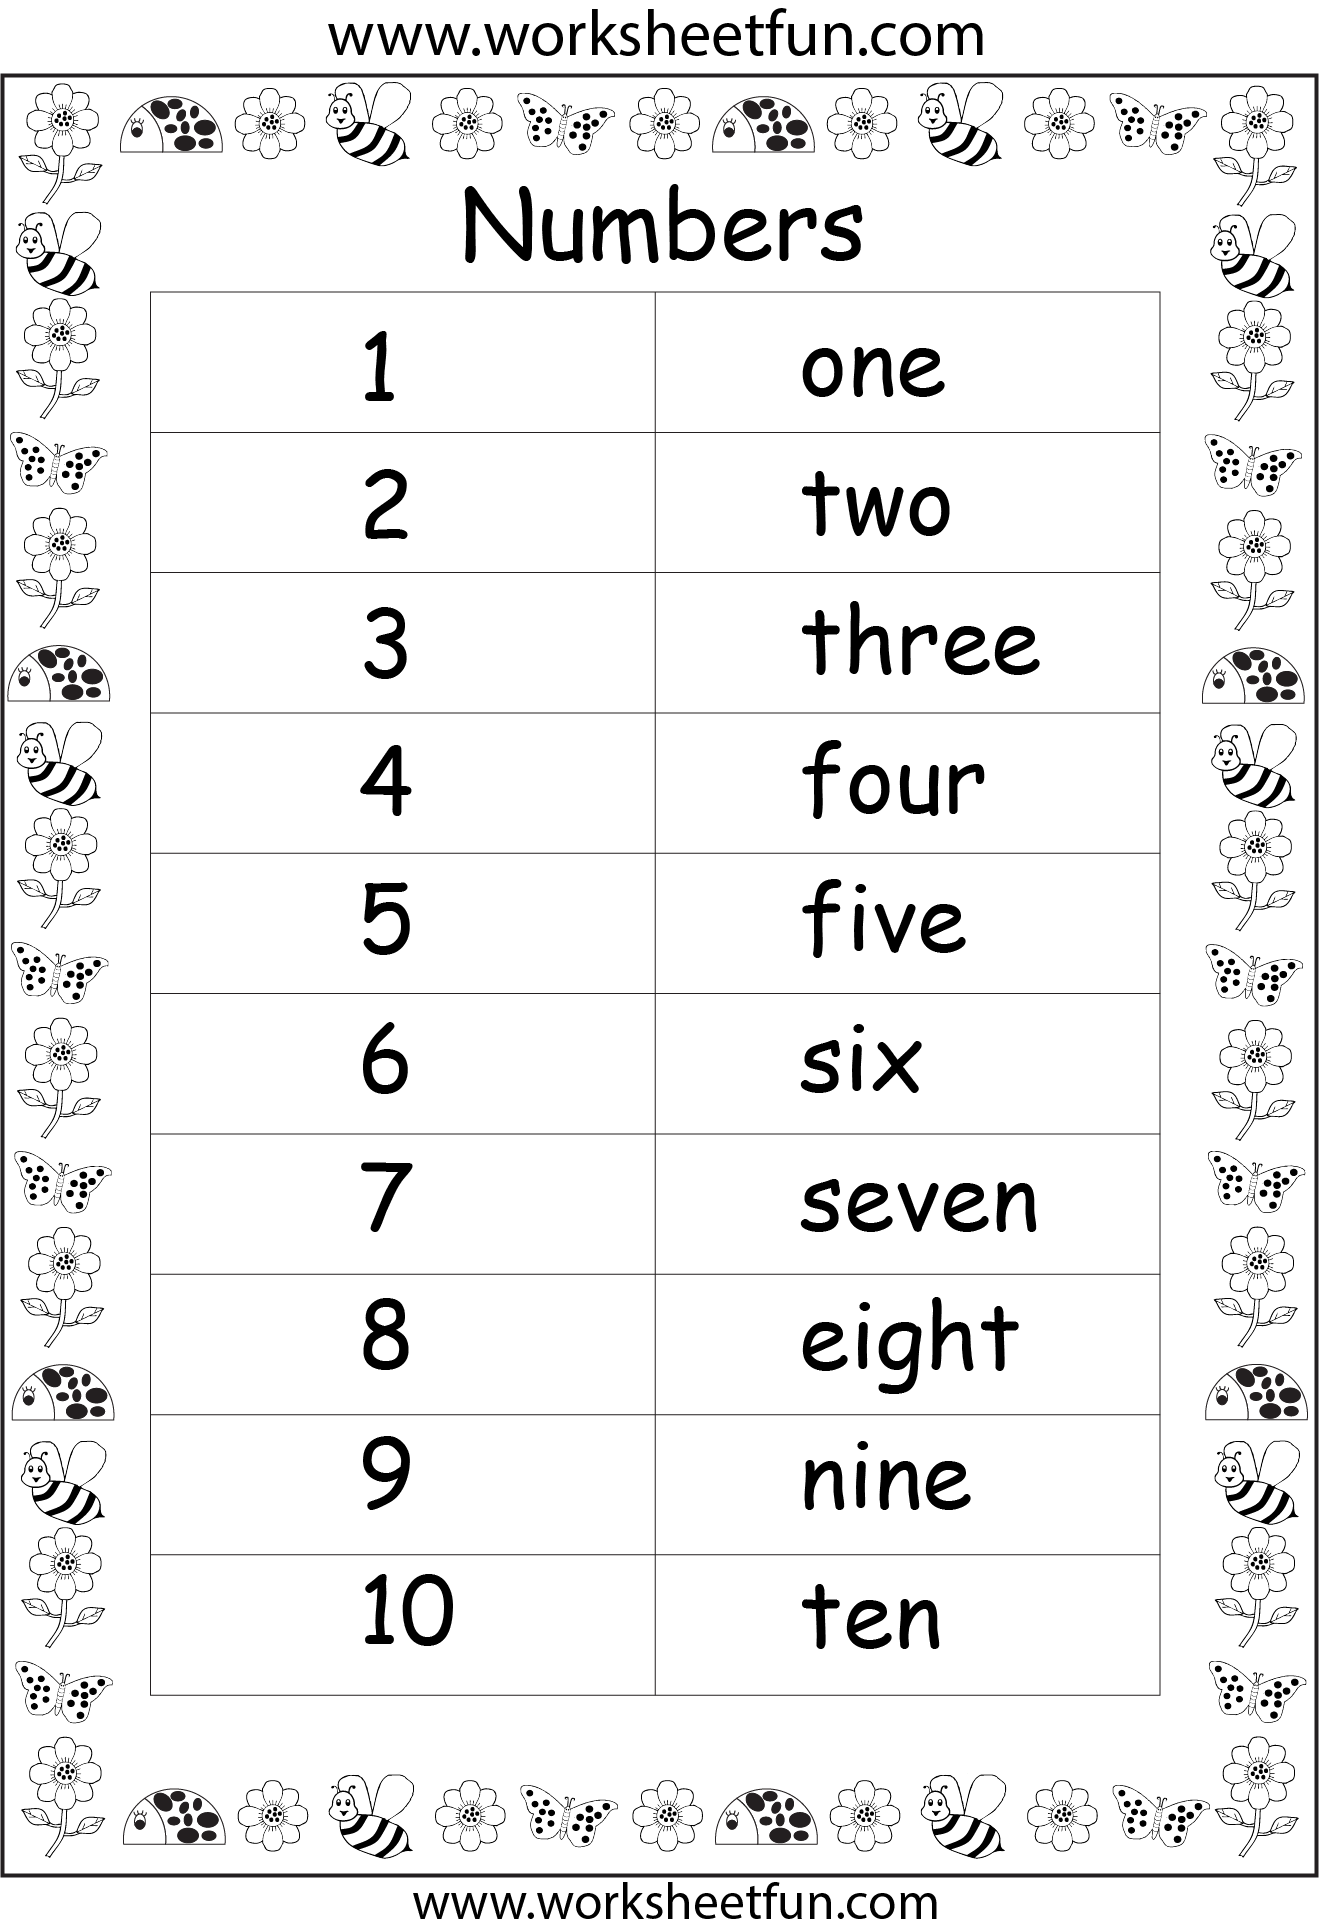 number-names-worksheet-number-words-worksheets-number-words-worksheets-gambaran